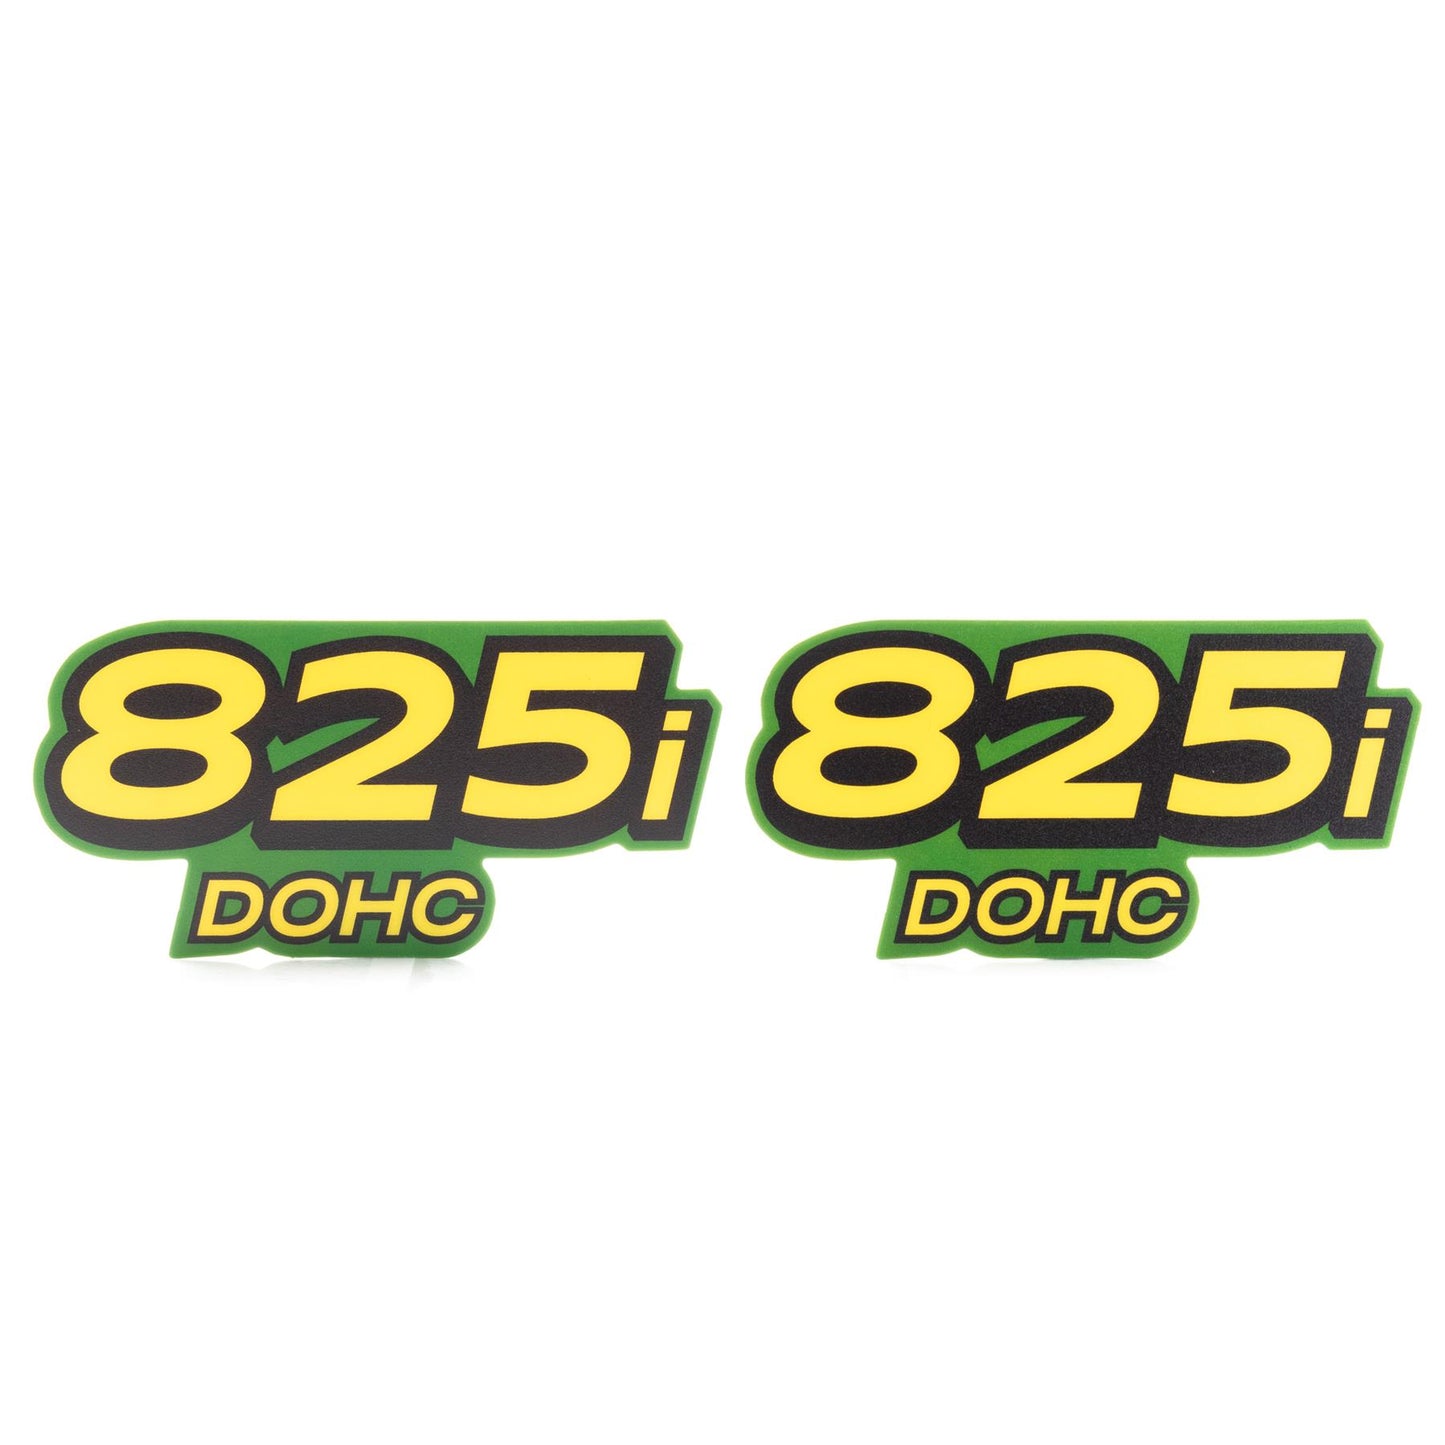 John Deere Decal - 825i DOHC - Set of 2 - M158179